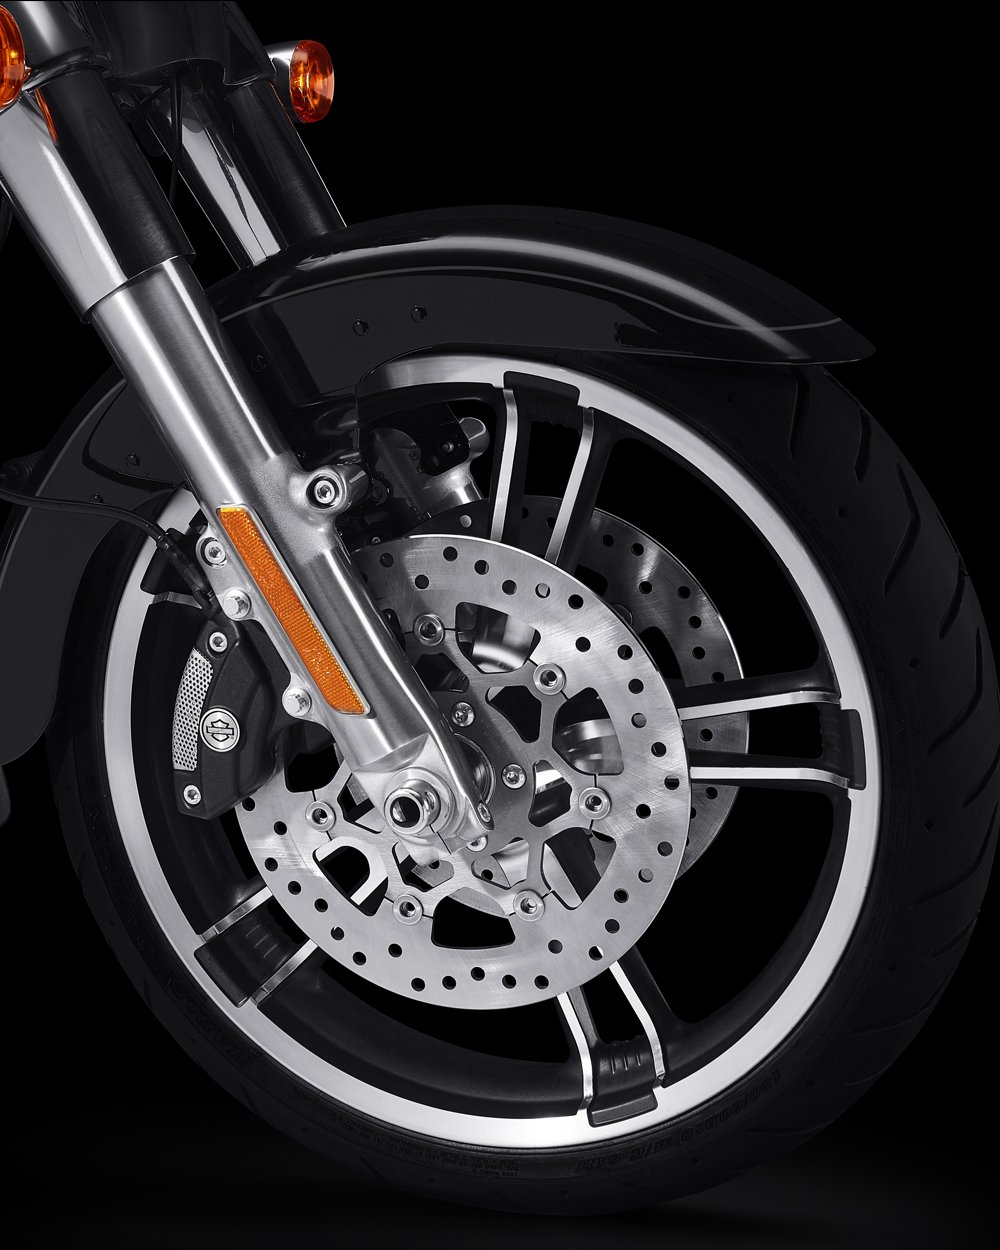 Reflex™ Linked Brembo™ブレーキに、ABSを標準搭載